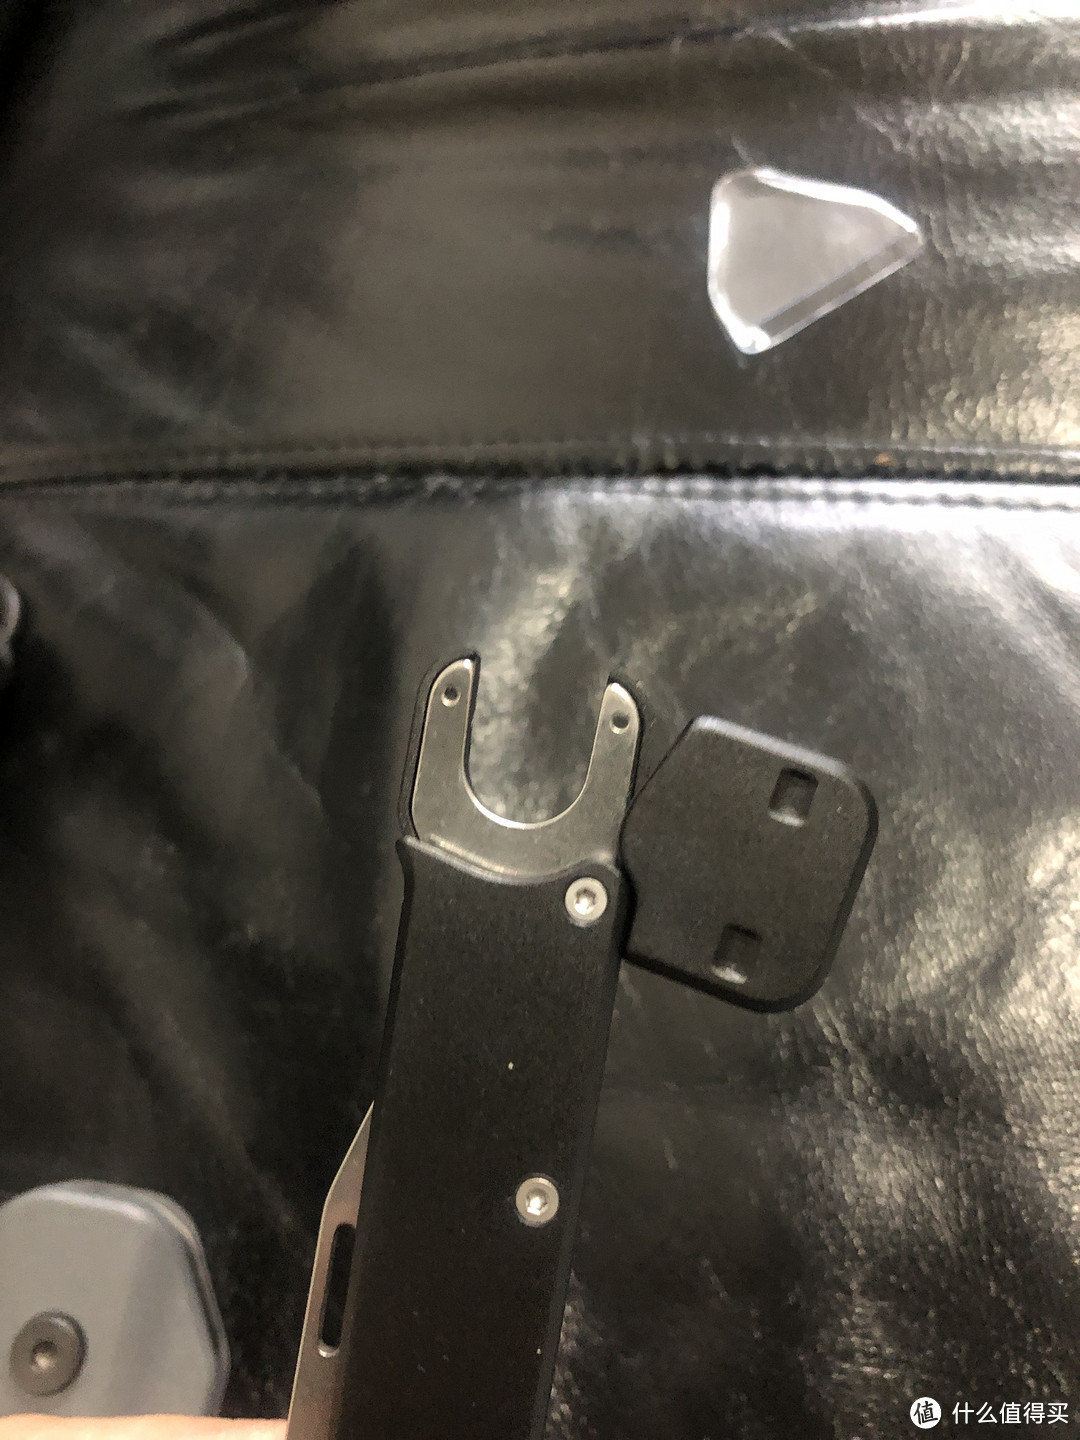 小刀刀把尾部，可以将黑色塑料尾帽打开，露出u型插口，和铲子主体结合在一块，这个小刀就是延长柄了。